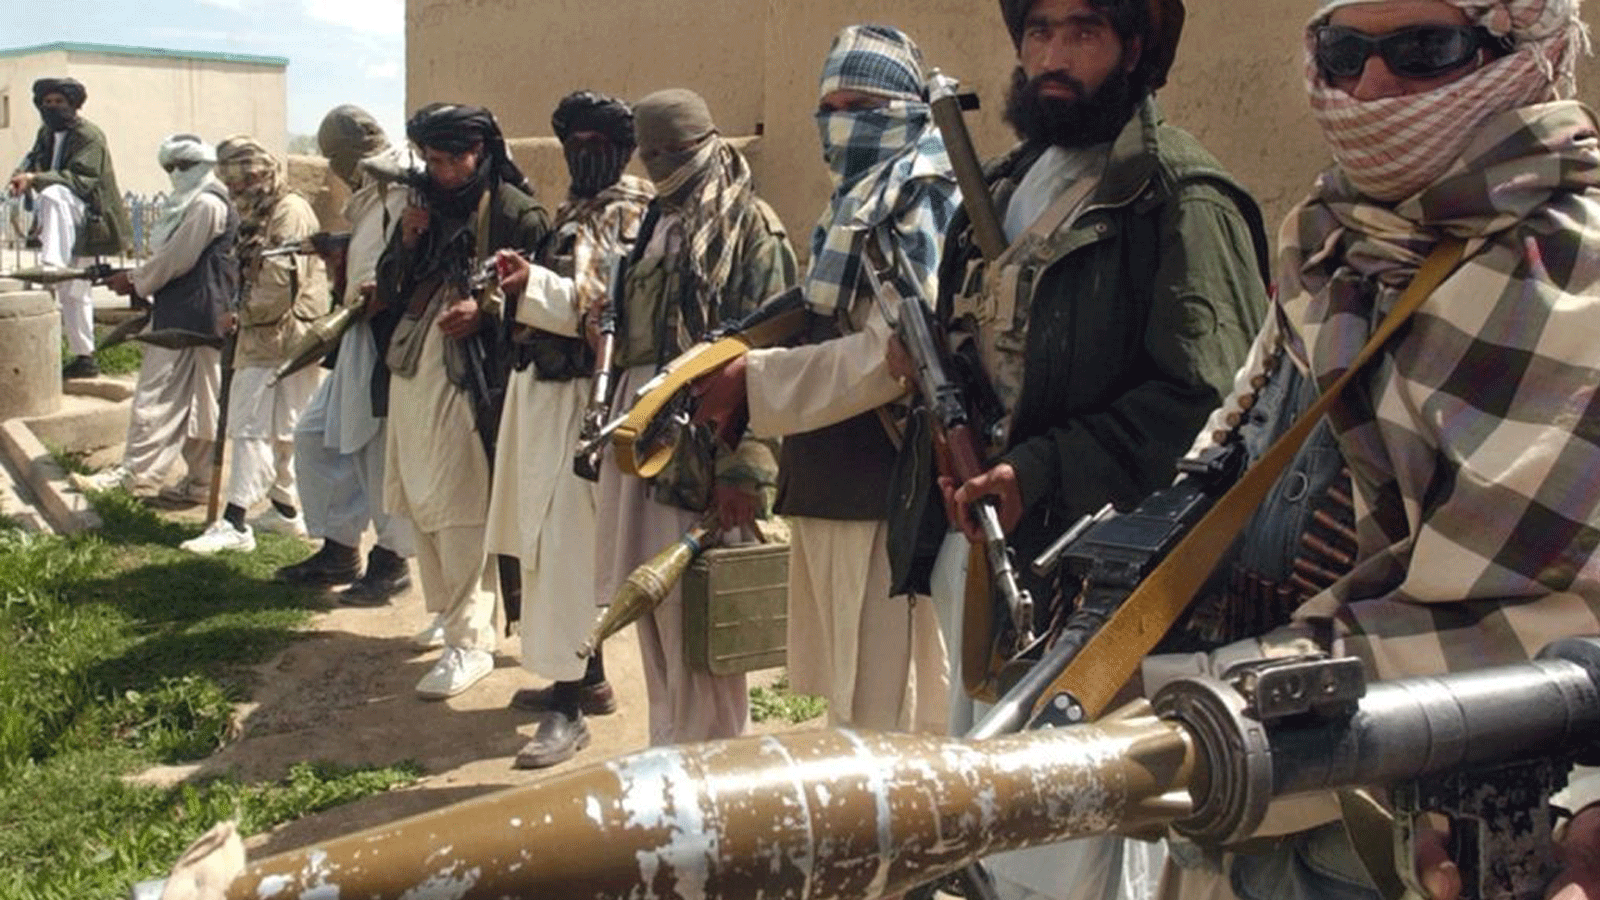 مقاتلو طالبان في طابور يحملون بنادق ومتفجرات(صورة أرشيفية)